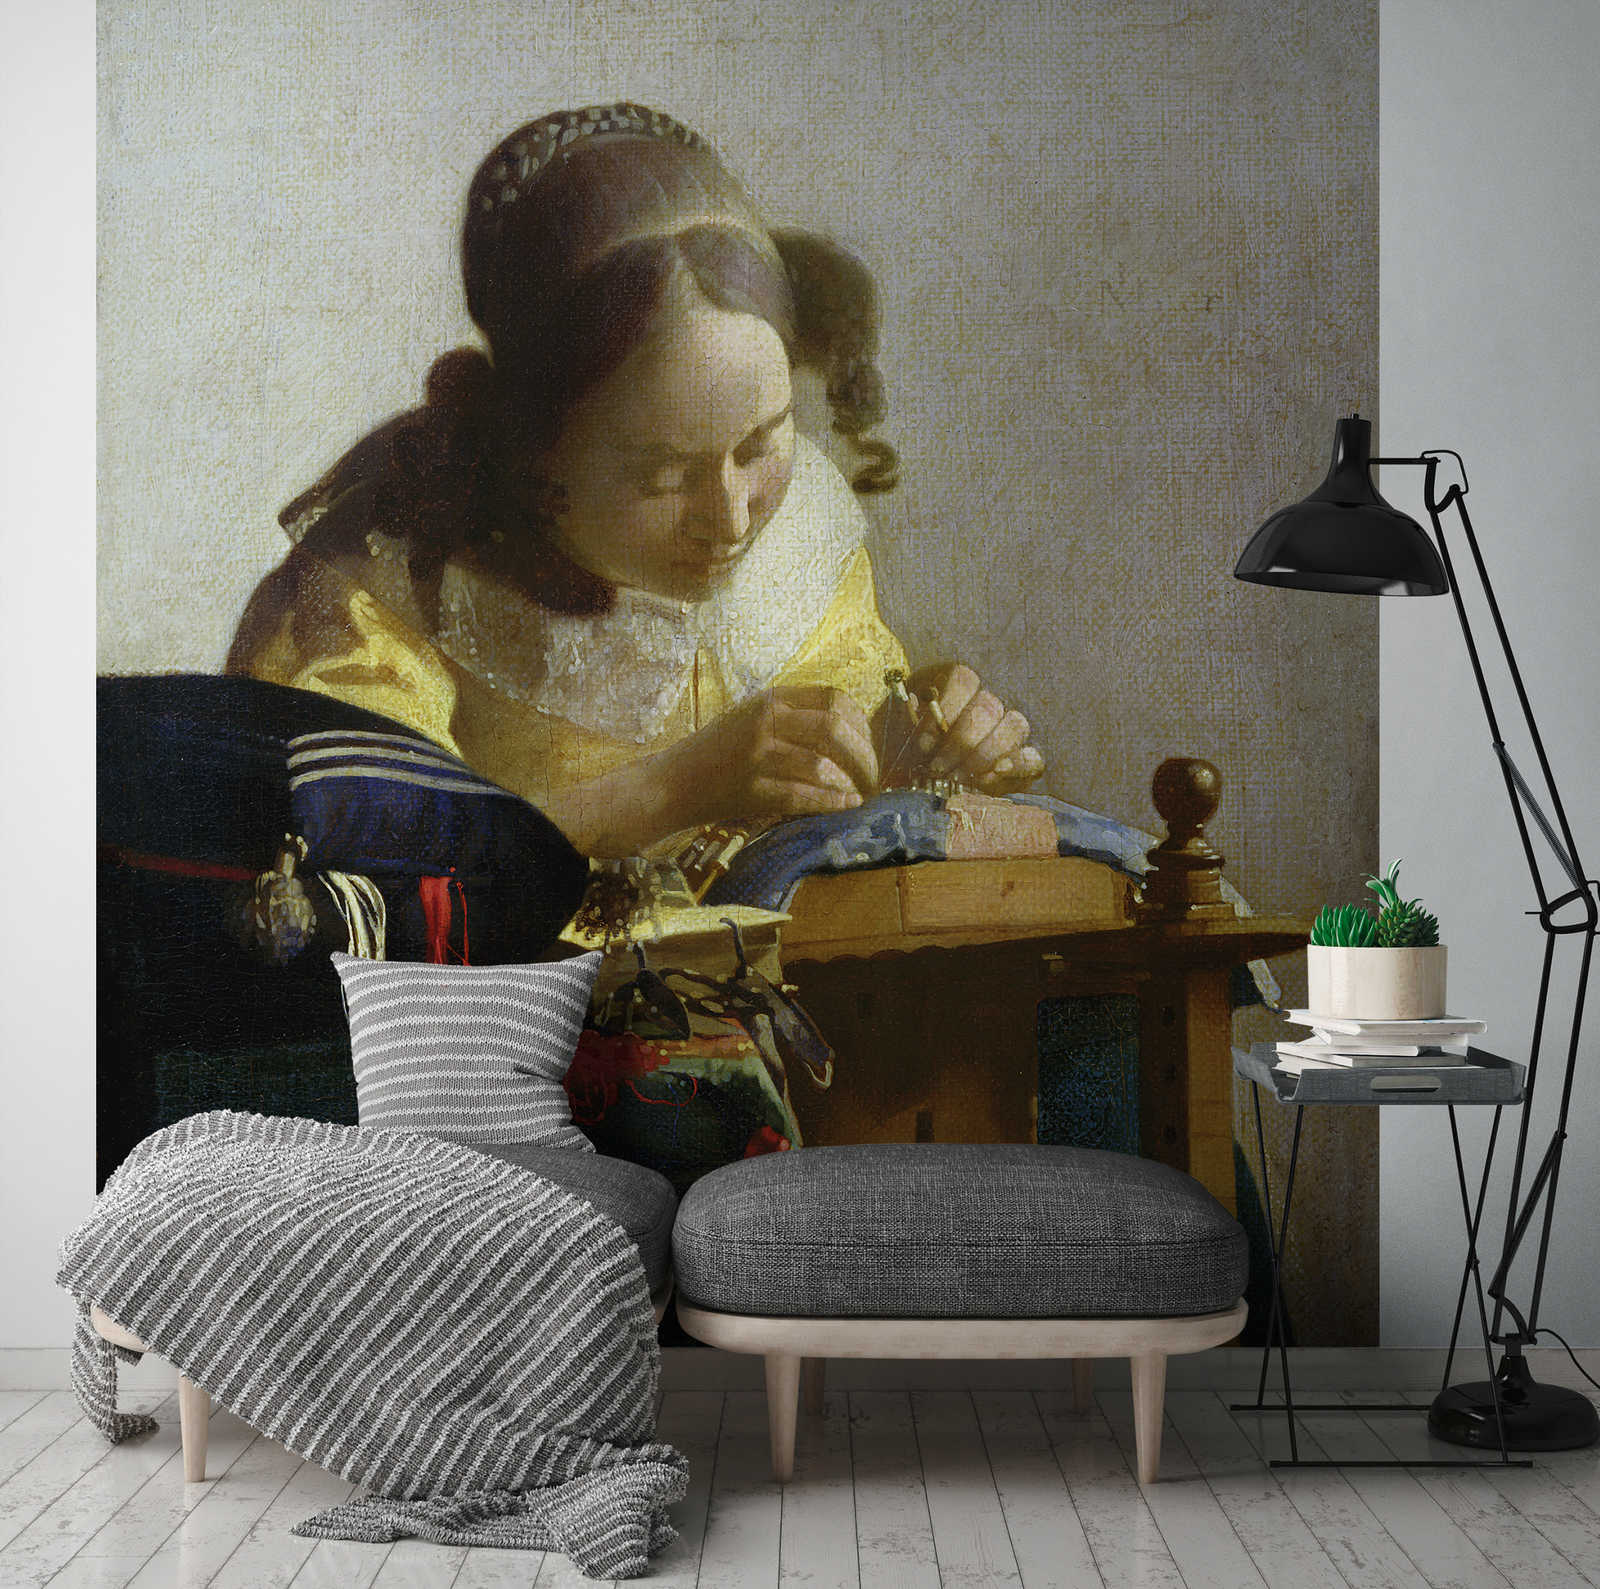             Papier peint panoramique "Les dentellières" de Jan Vermeer
        